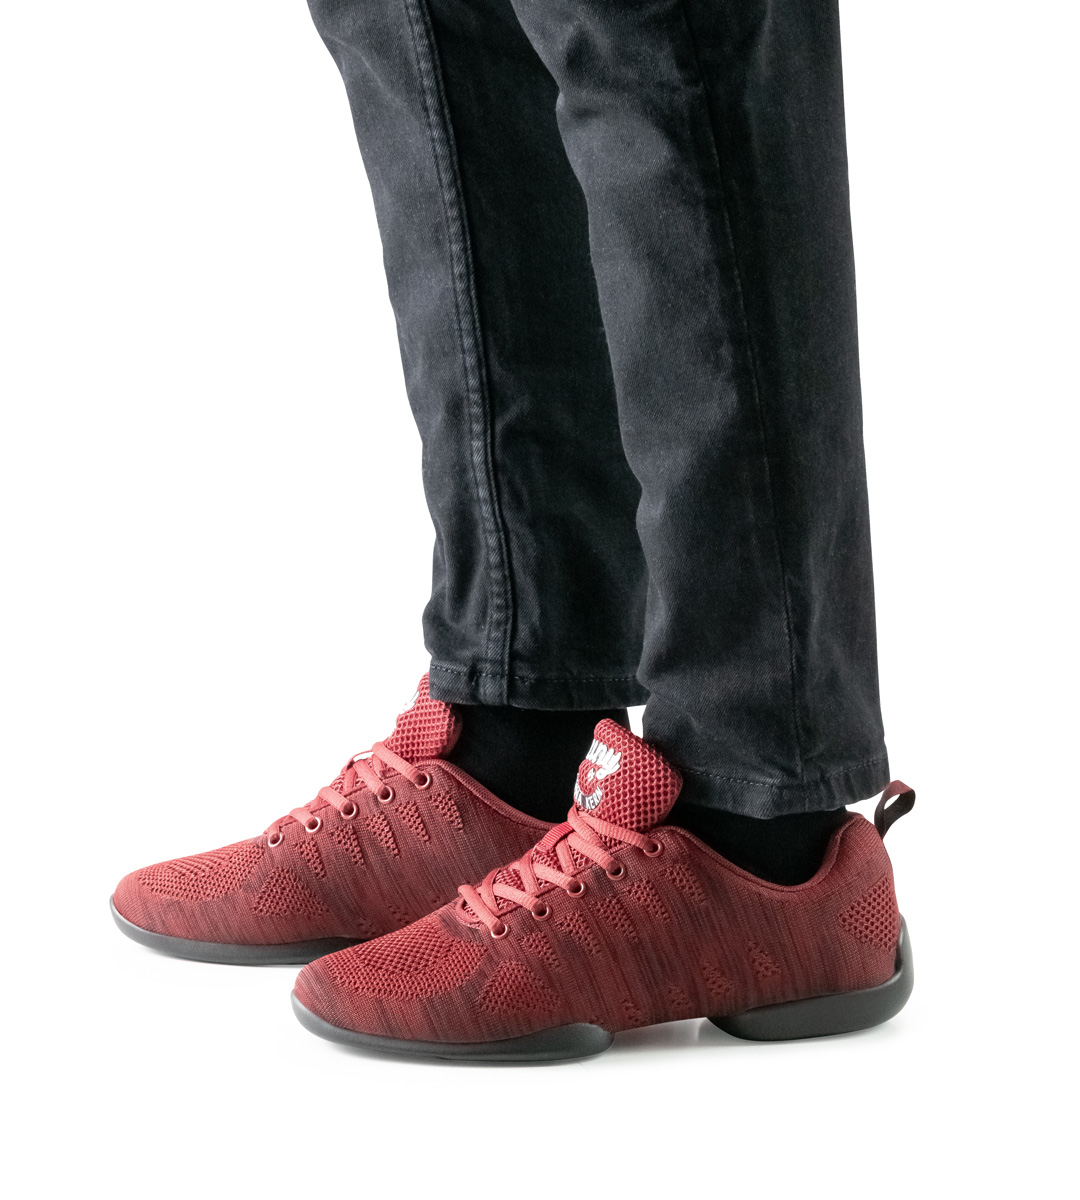 schwarze Hose in Kombination mit rotem Herrentanz-Sneaker von Suny